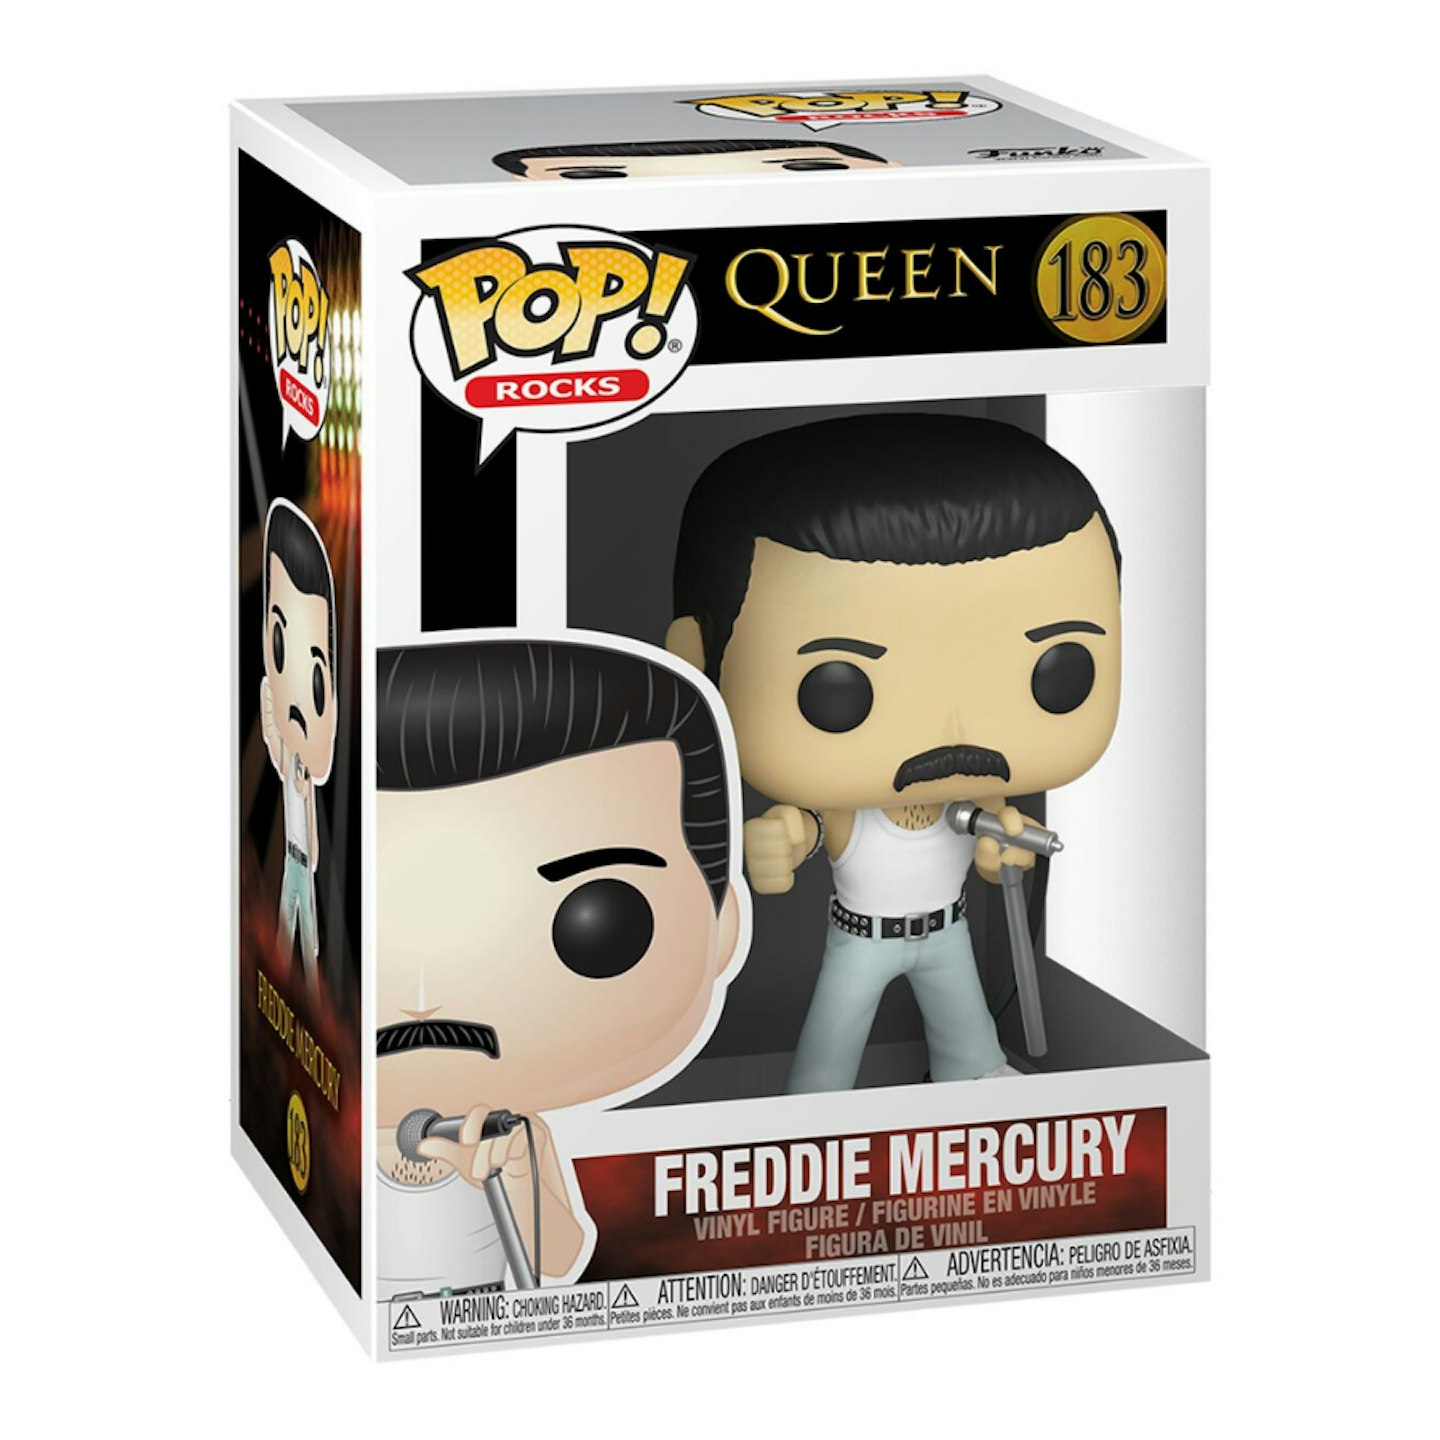 Freddie Mercury Rocks Vinyl Figur 183 Funko Pop!